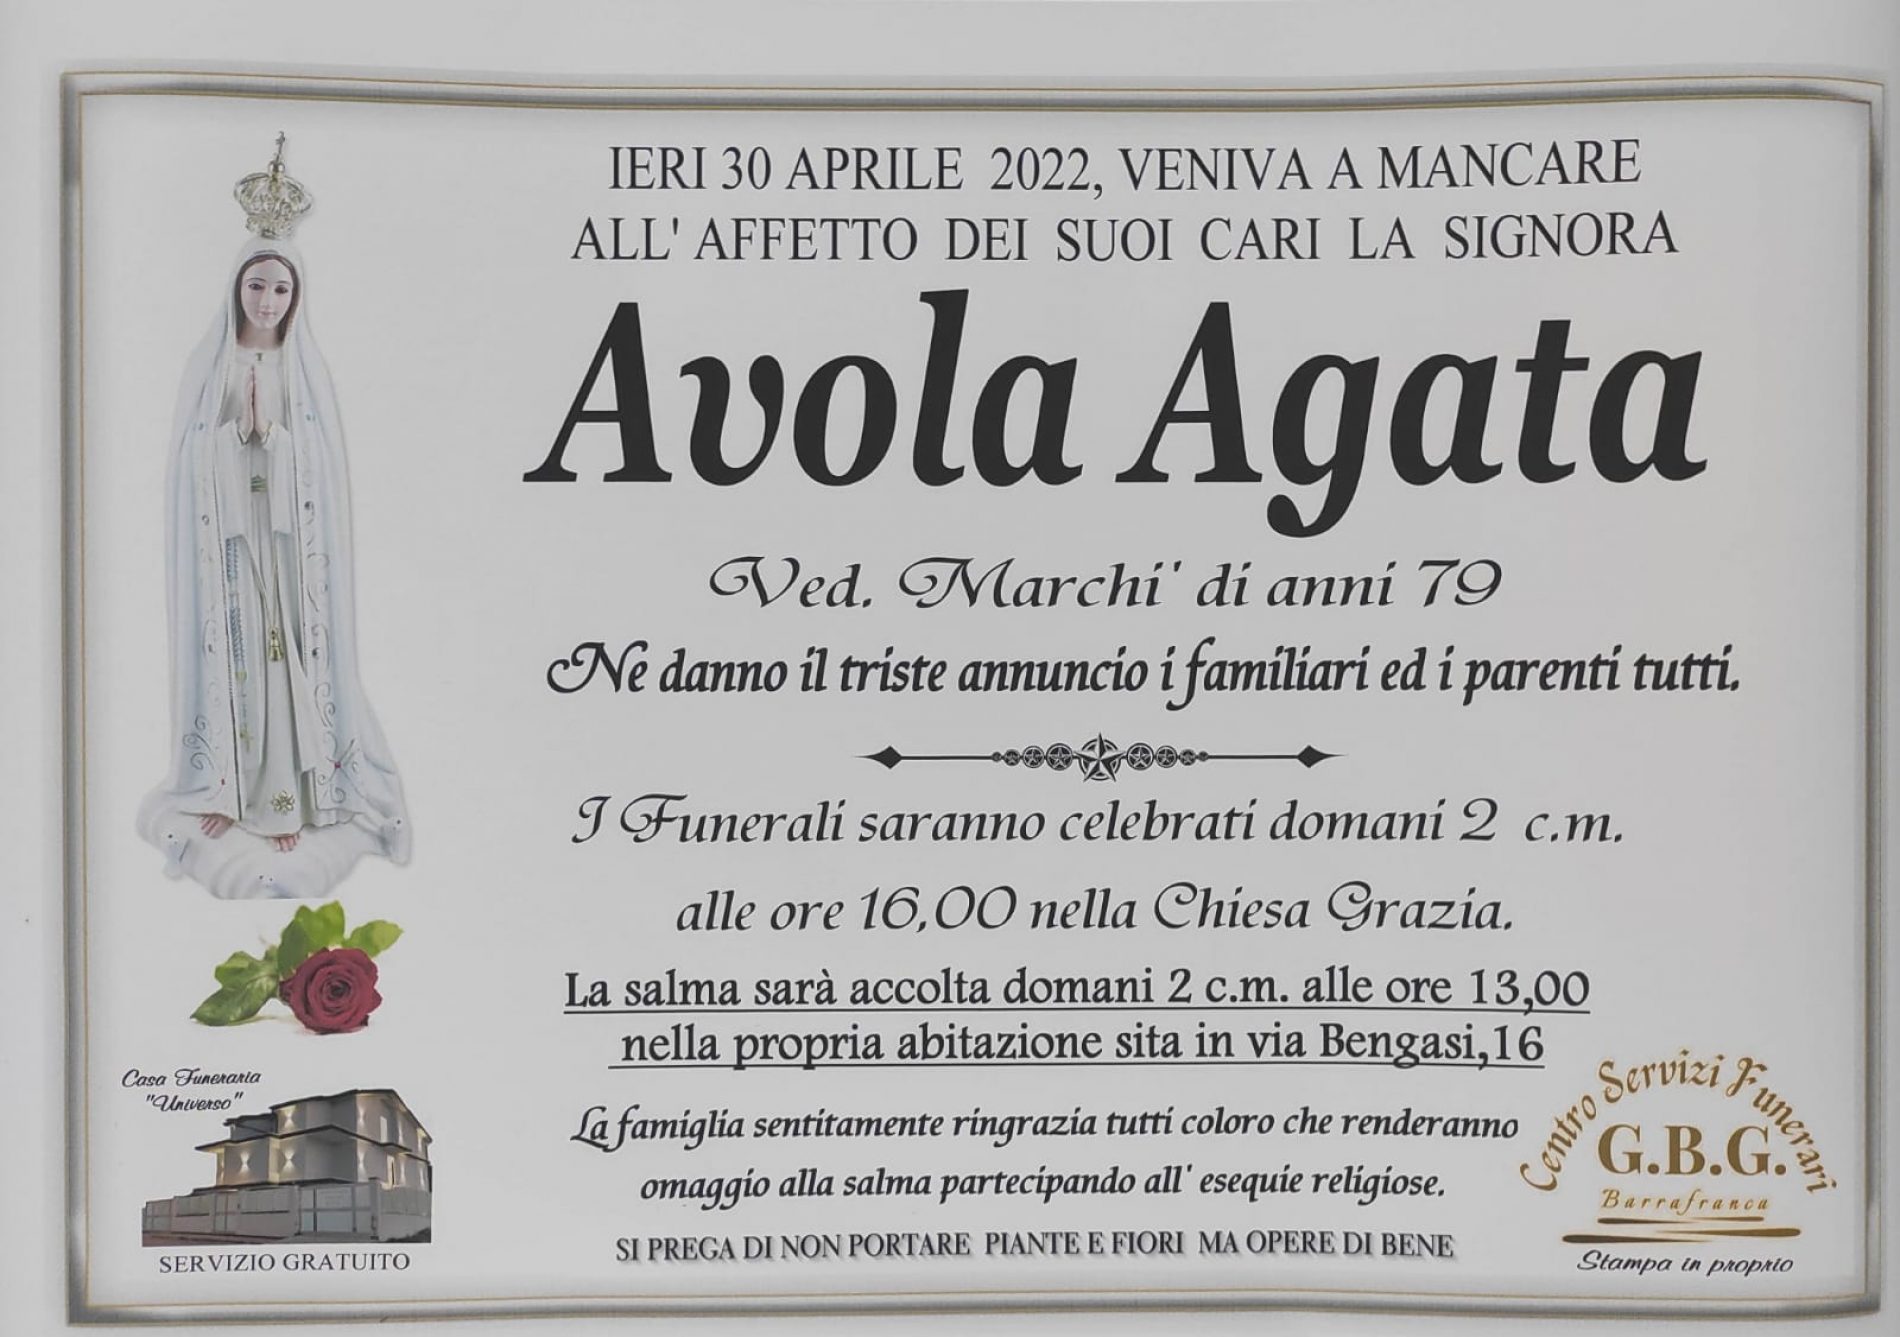 Annuncio servizi funerari agenzia G.B.G. signora Avola Agata ved. Marchì di anni 79